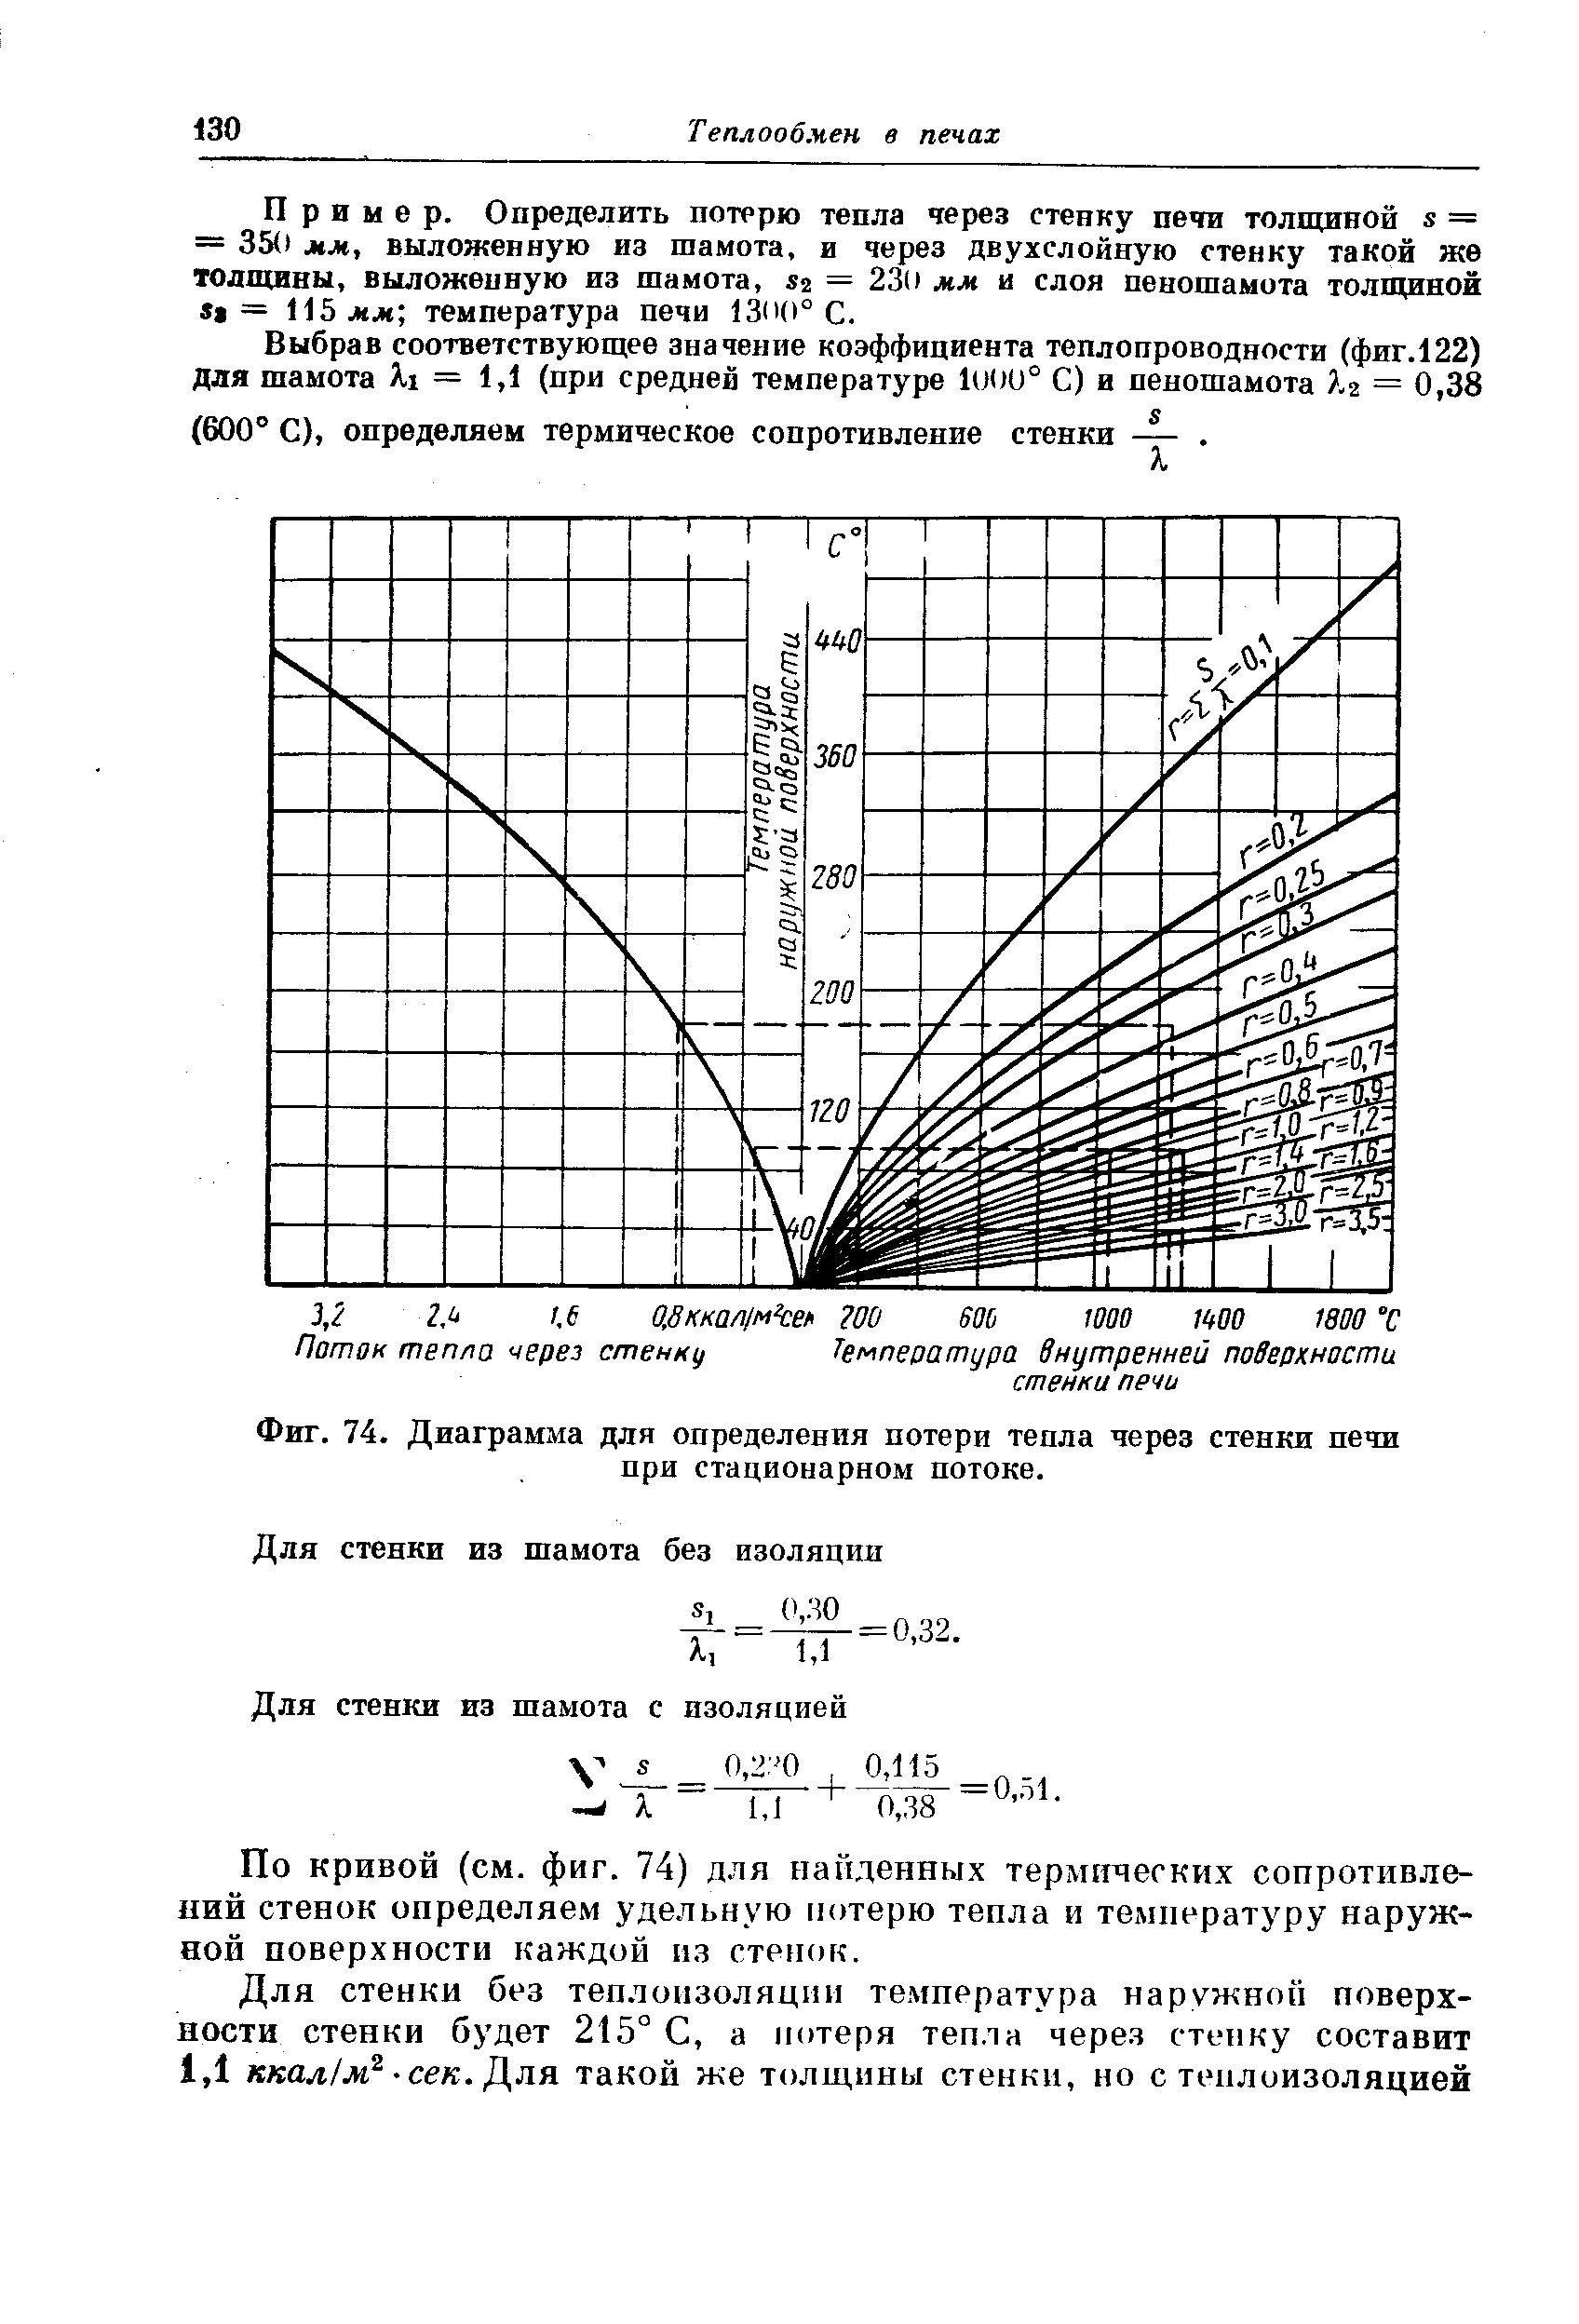 Фиг. 74. Диаграмма для определения <a href="/info/613151">потери тепла через стенки печи</a> при стационарном потоке.
